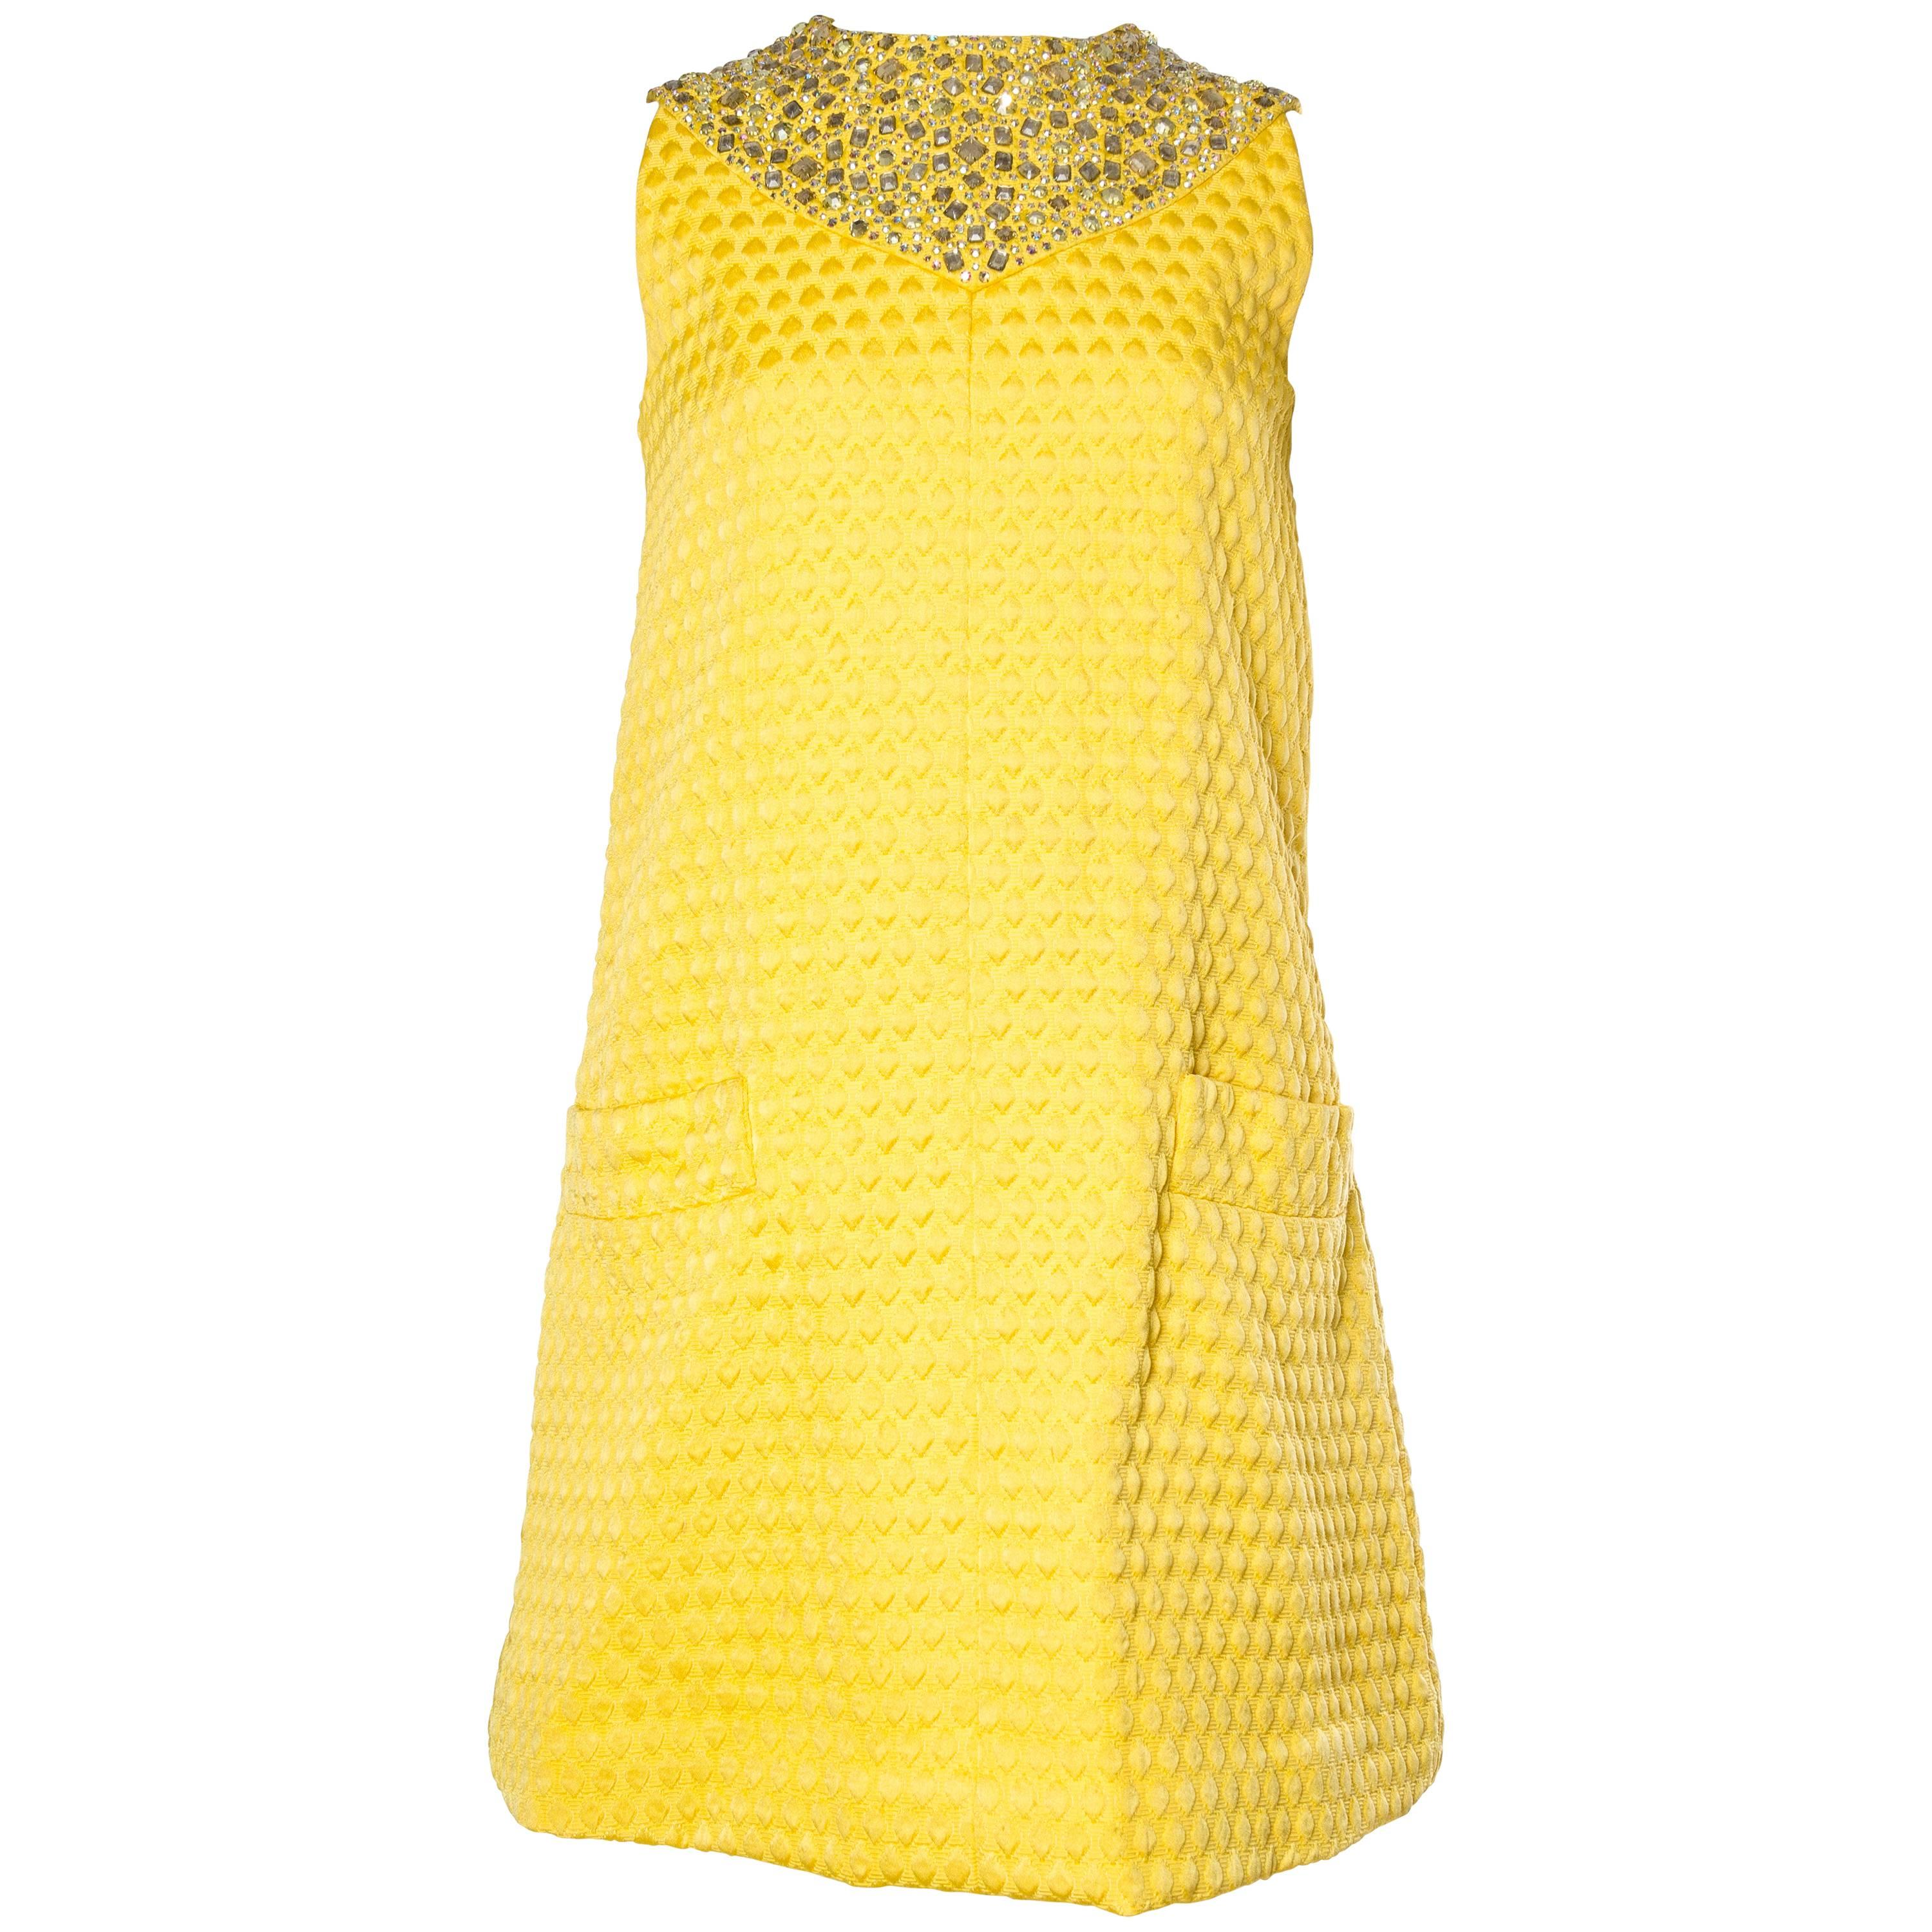 1960 OSCAR DE LA RENTA Yellow Geometric Rayon Blend Matelassé Cocktail Dress Wi